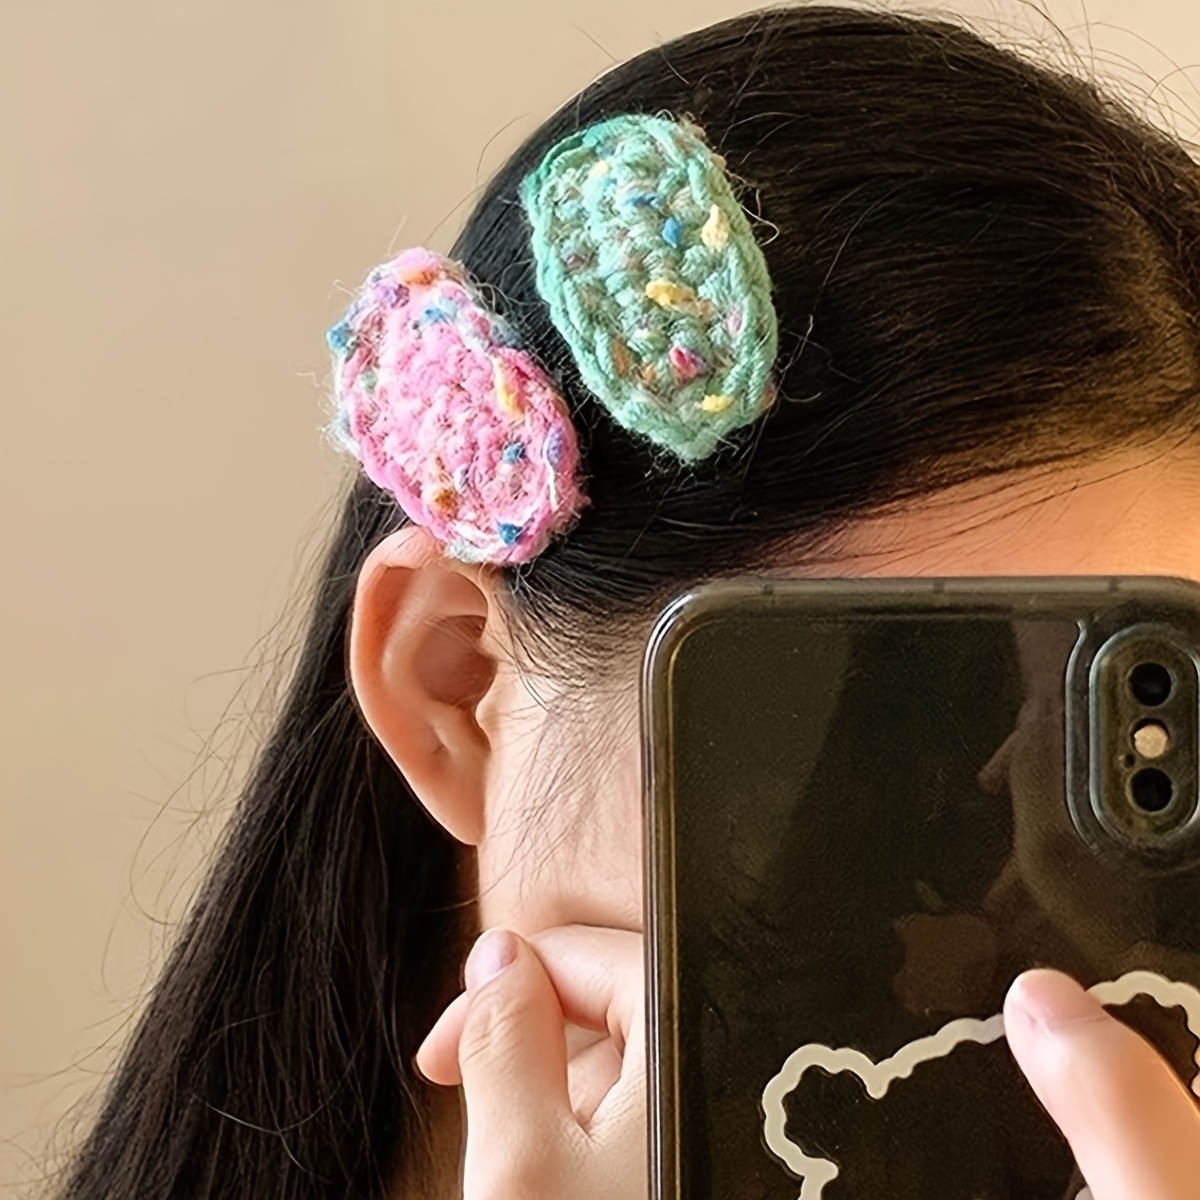 Whoamigo DIY Hair Clips Kit-Crochet Hair Pins Baby Girls Knitted Hairgrips  Handmade Hair Barrettes Crochet Kit-Gift for Beginners 